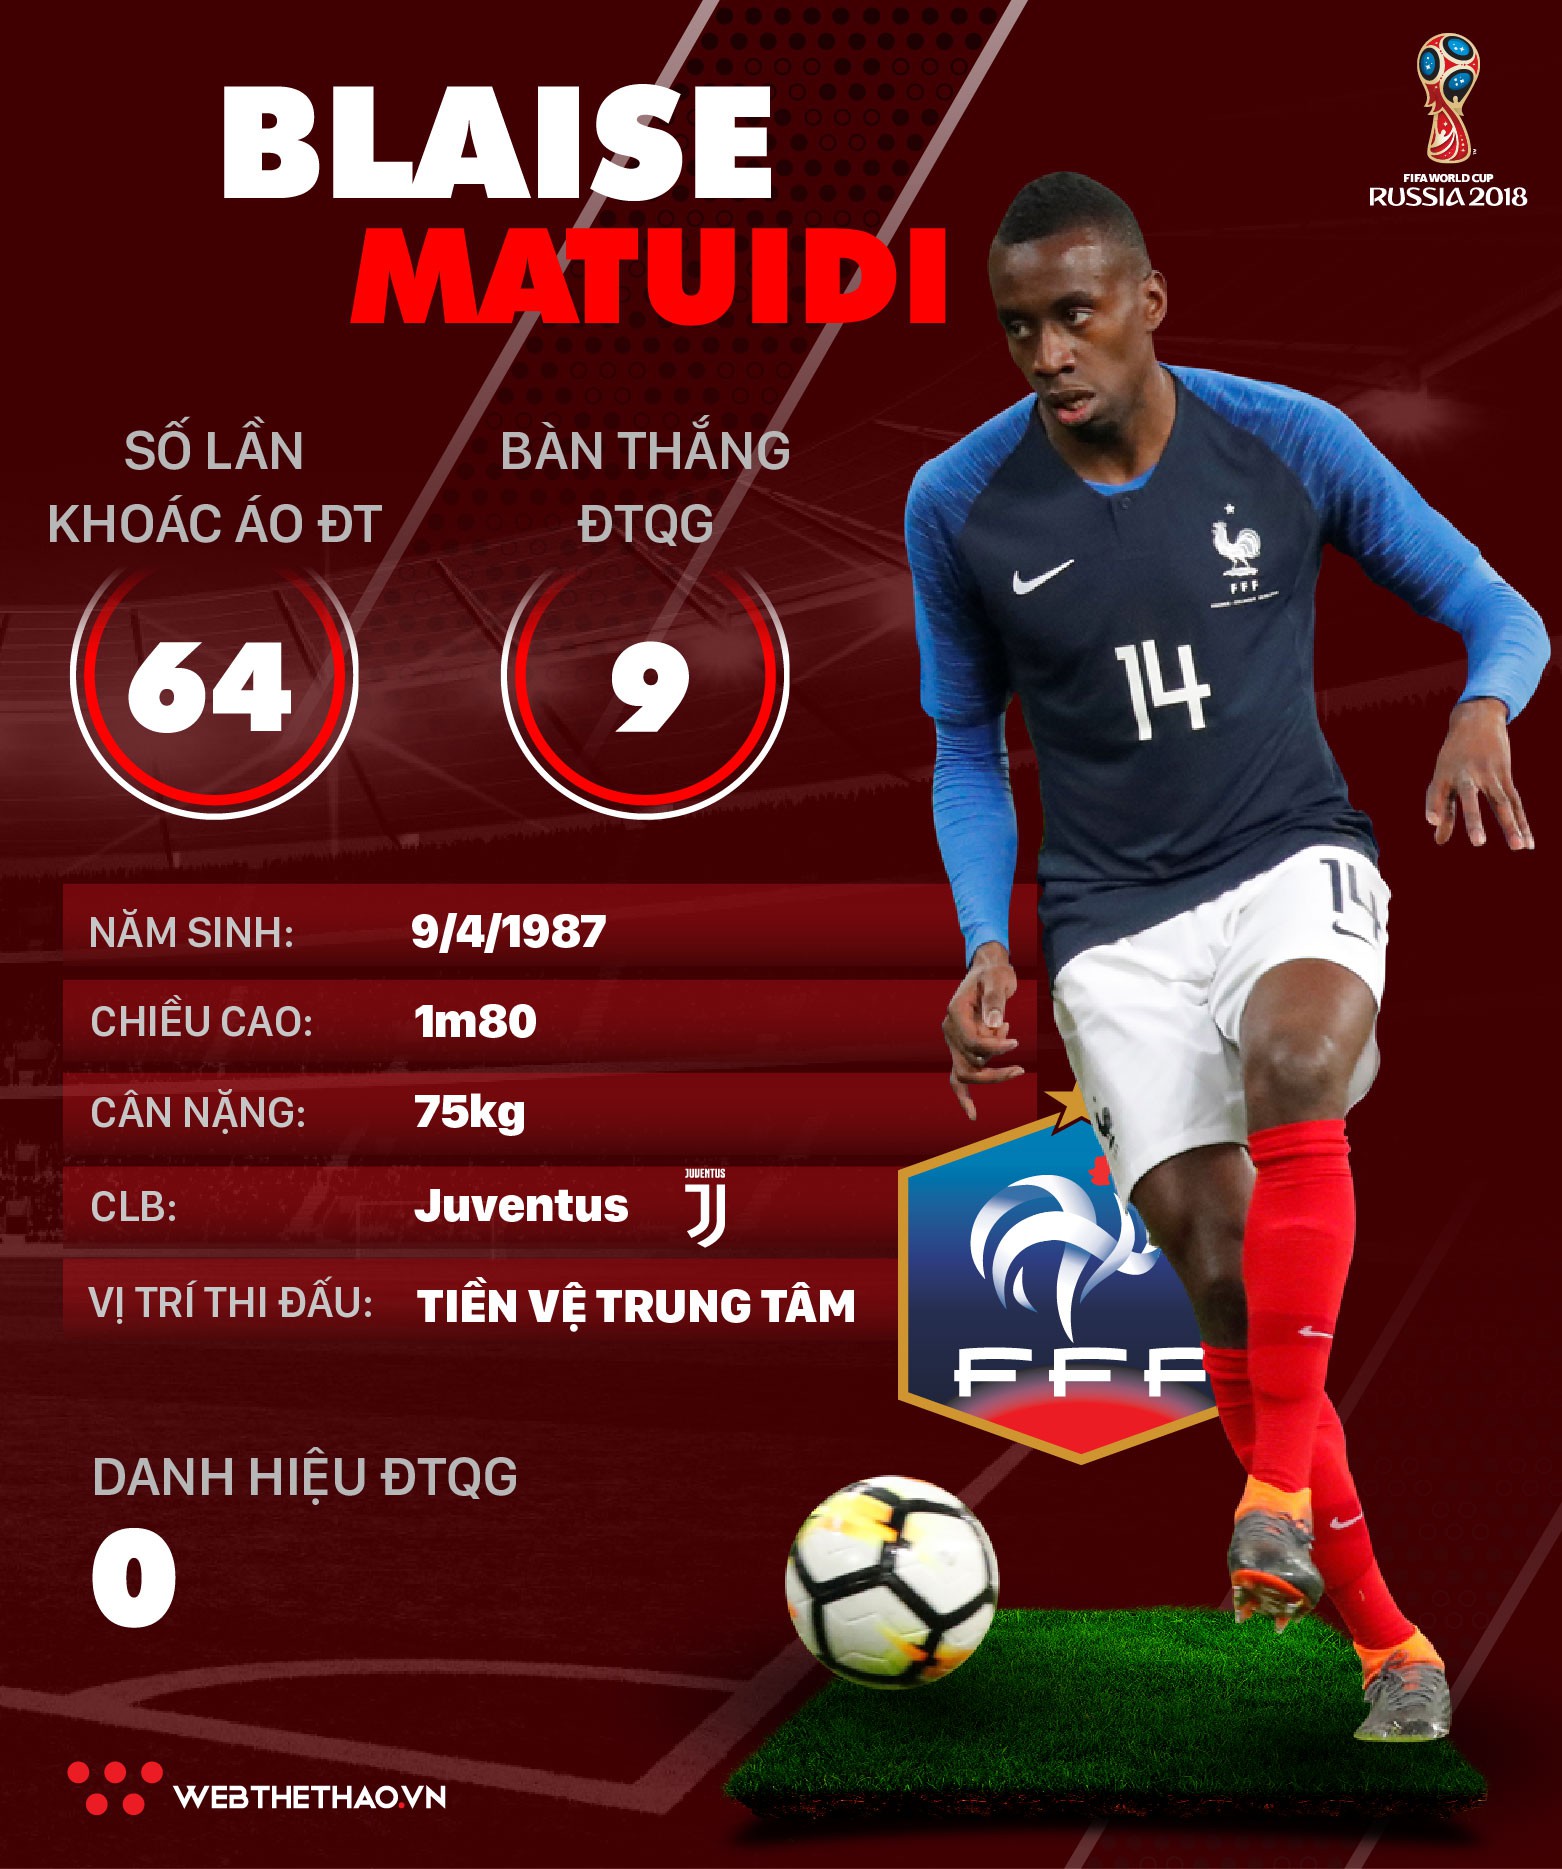 Thông tin cầu thủ Blaise Matuidi của ĐT Pháp dự World Cup 2018 - Ảnh 1.